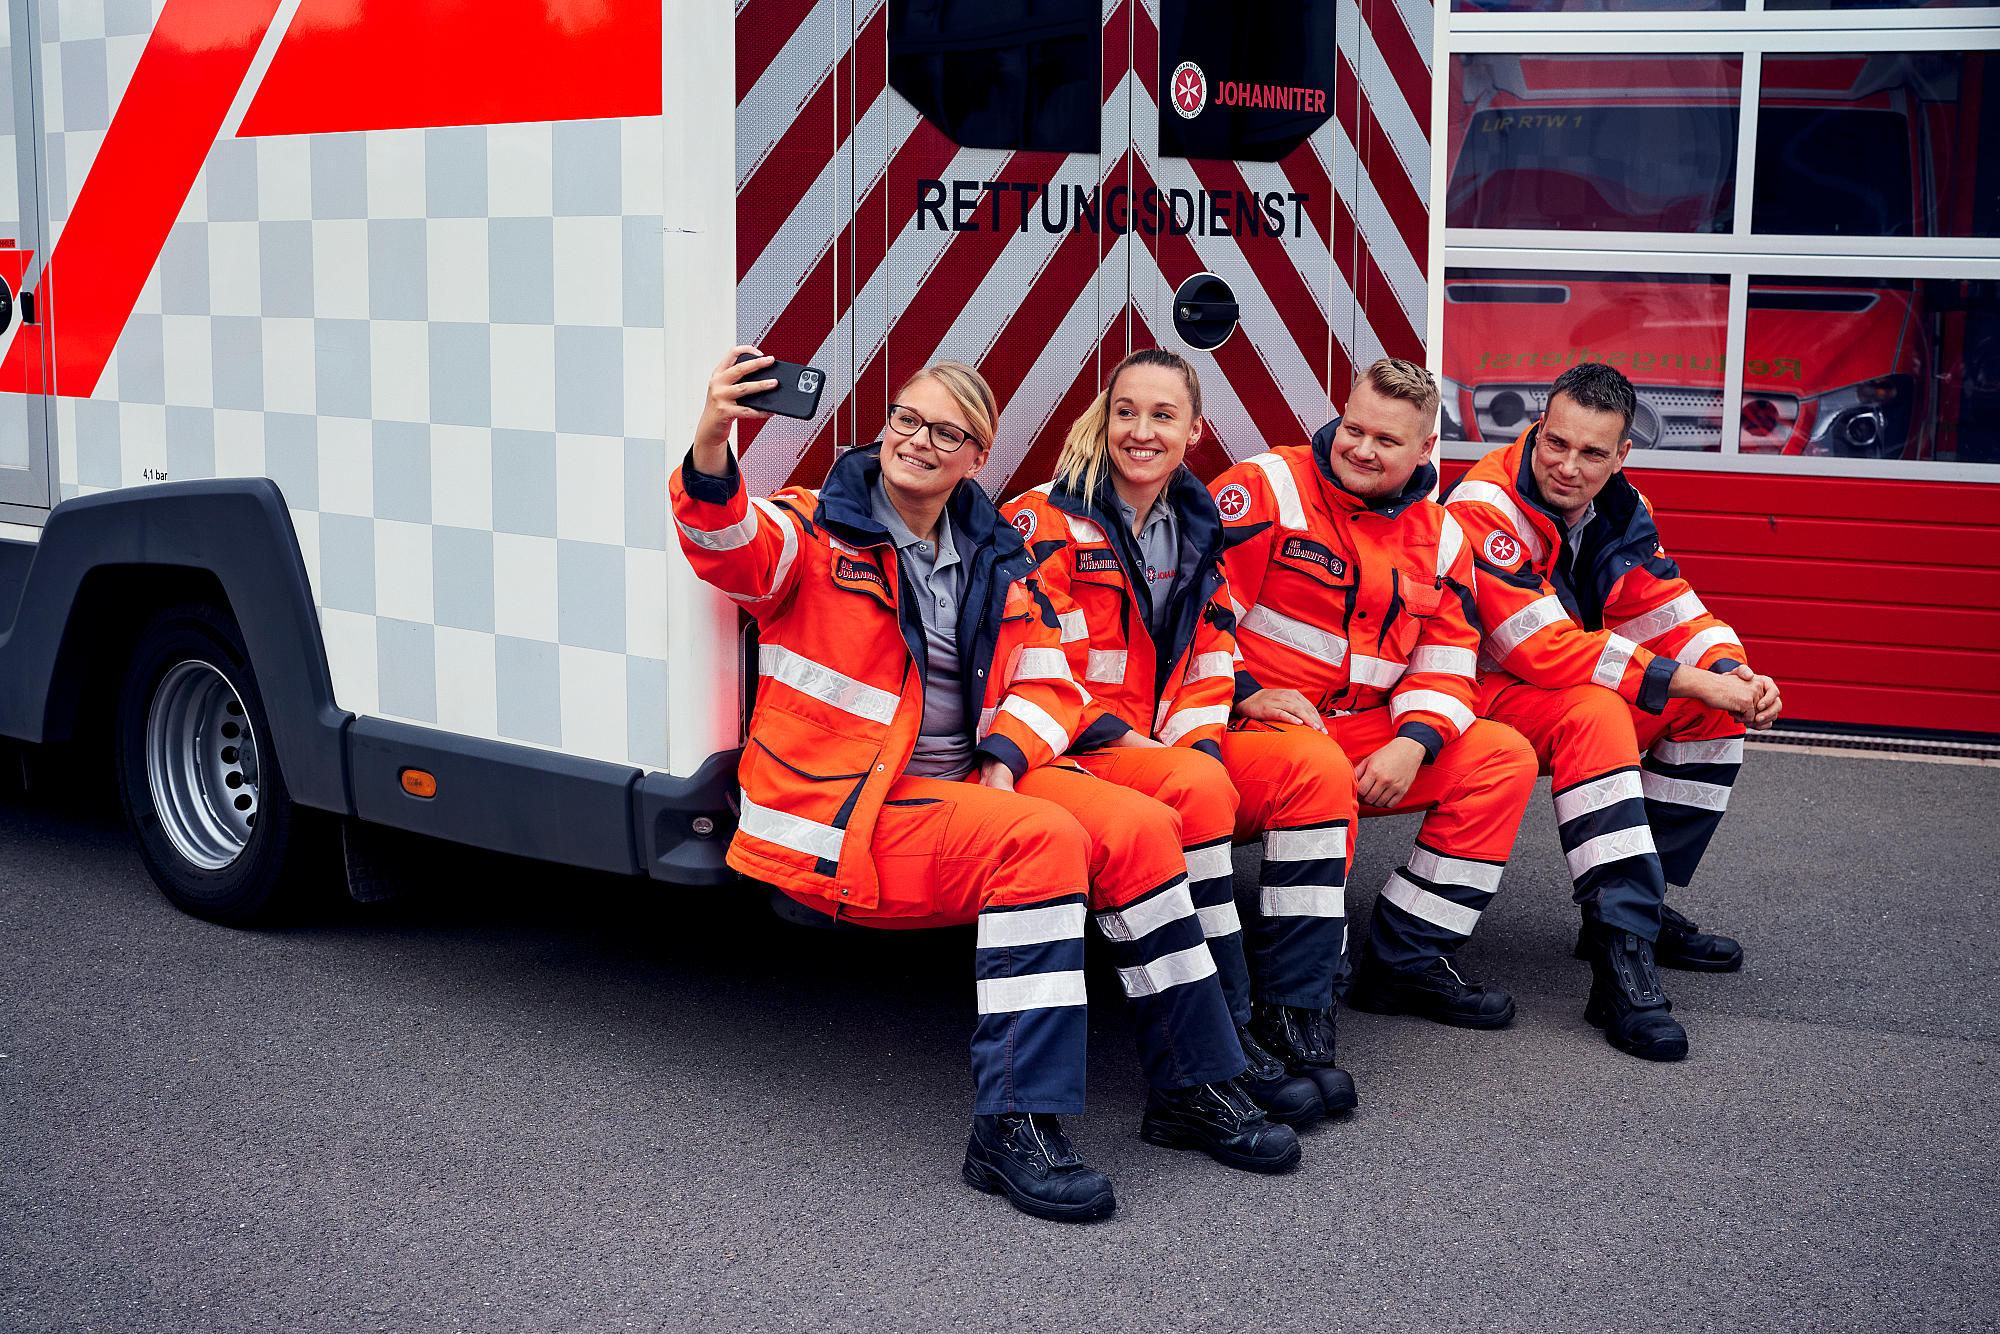 Kundenfoto 3 Johanniter-Unfall-Hilfe e.V. - Rettungswache Hannover-Wasserturm